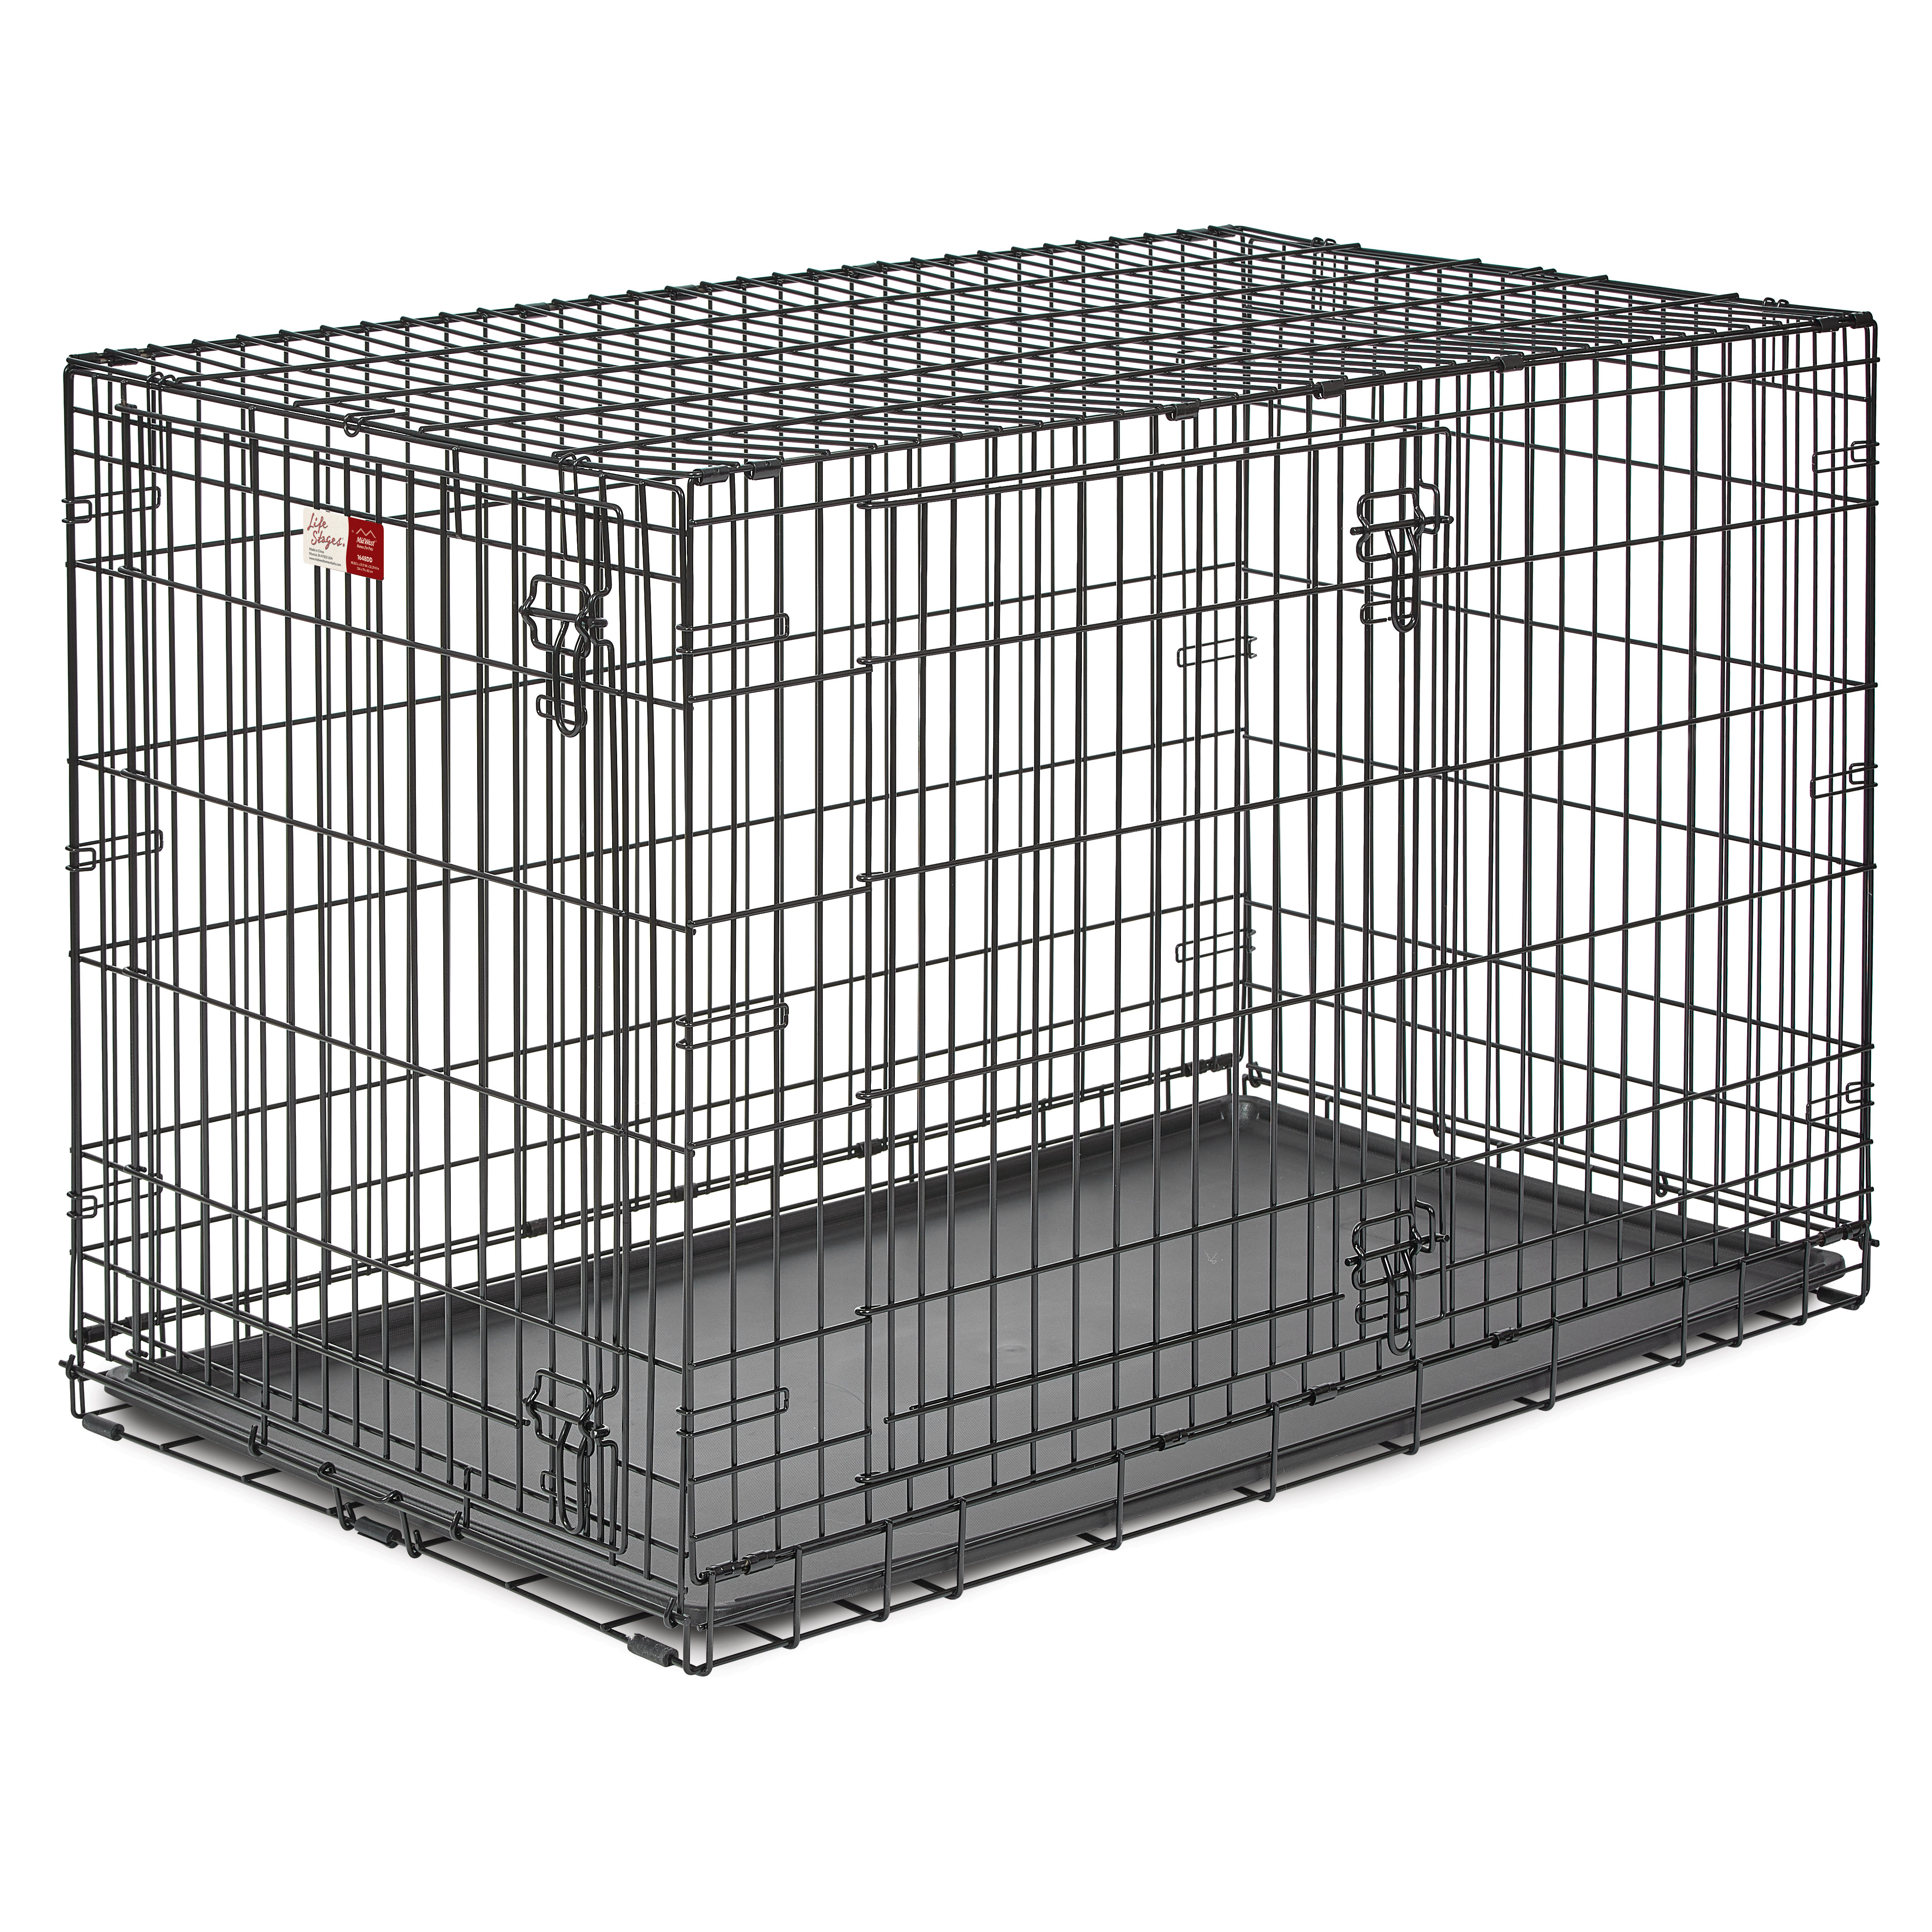 L'utilisation sécuritaire de la cage pour les chiens